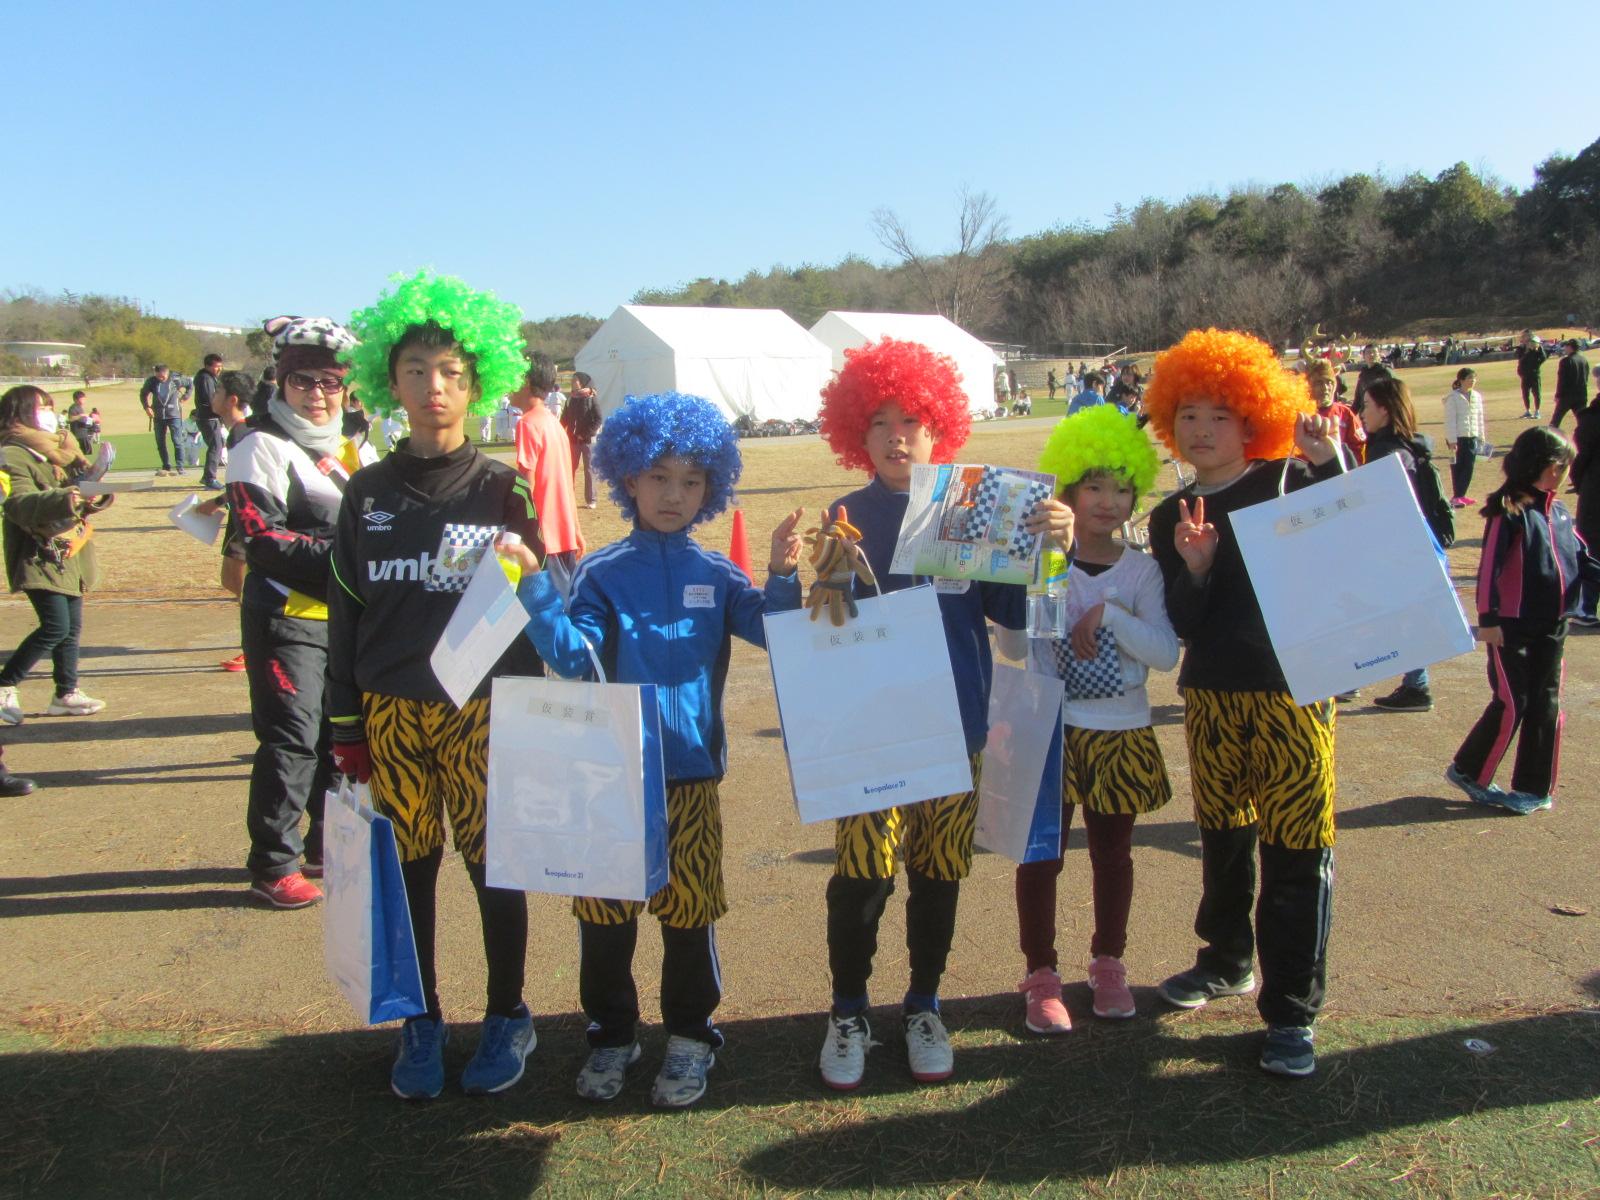 緑、青、赤、黄色、オレンジのパーマがかかったかつらをかぶり虎柄のパンツを履いてオニの仮装をしている5人の子供たちがピースサインをして写っている写真